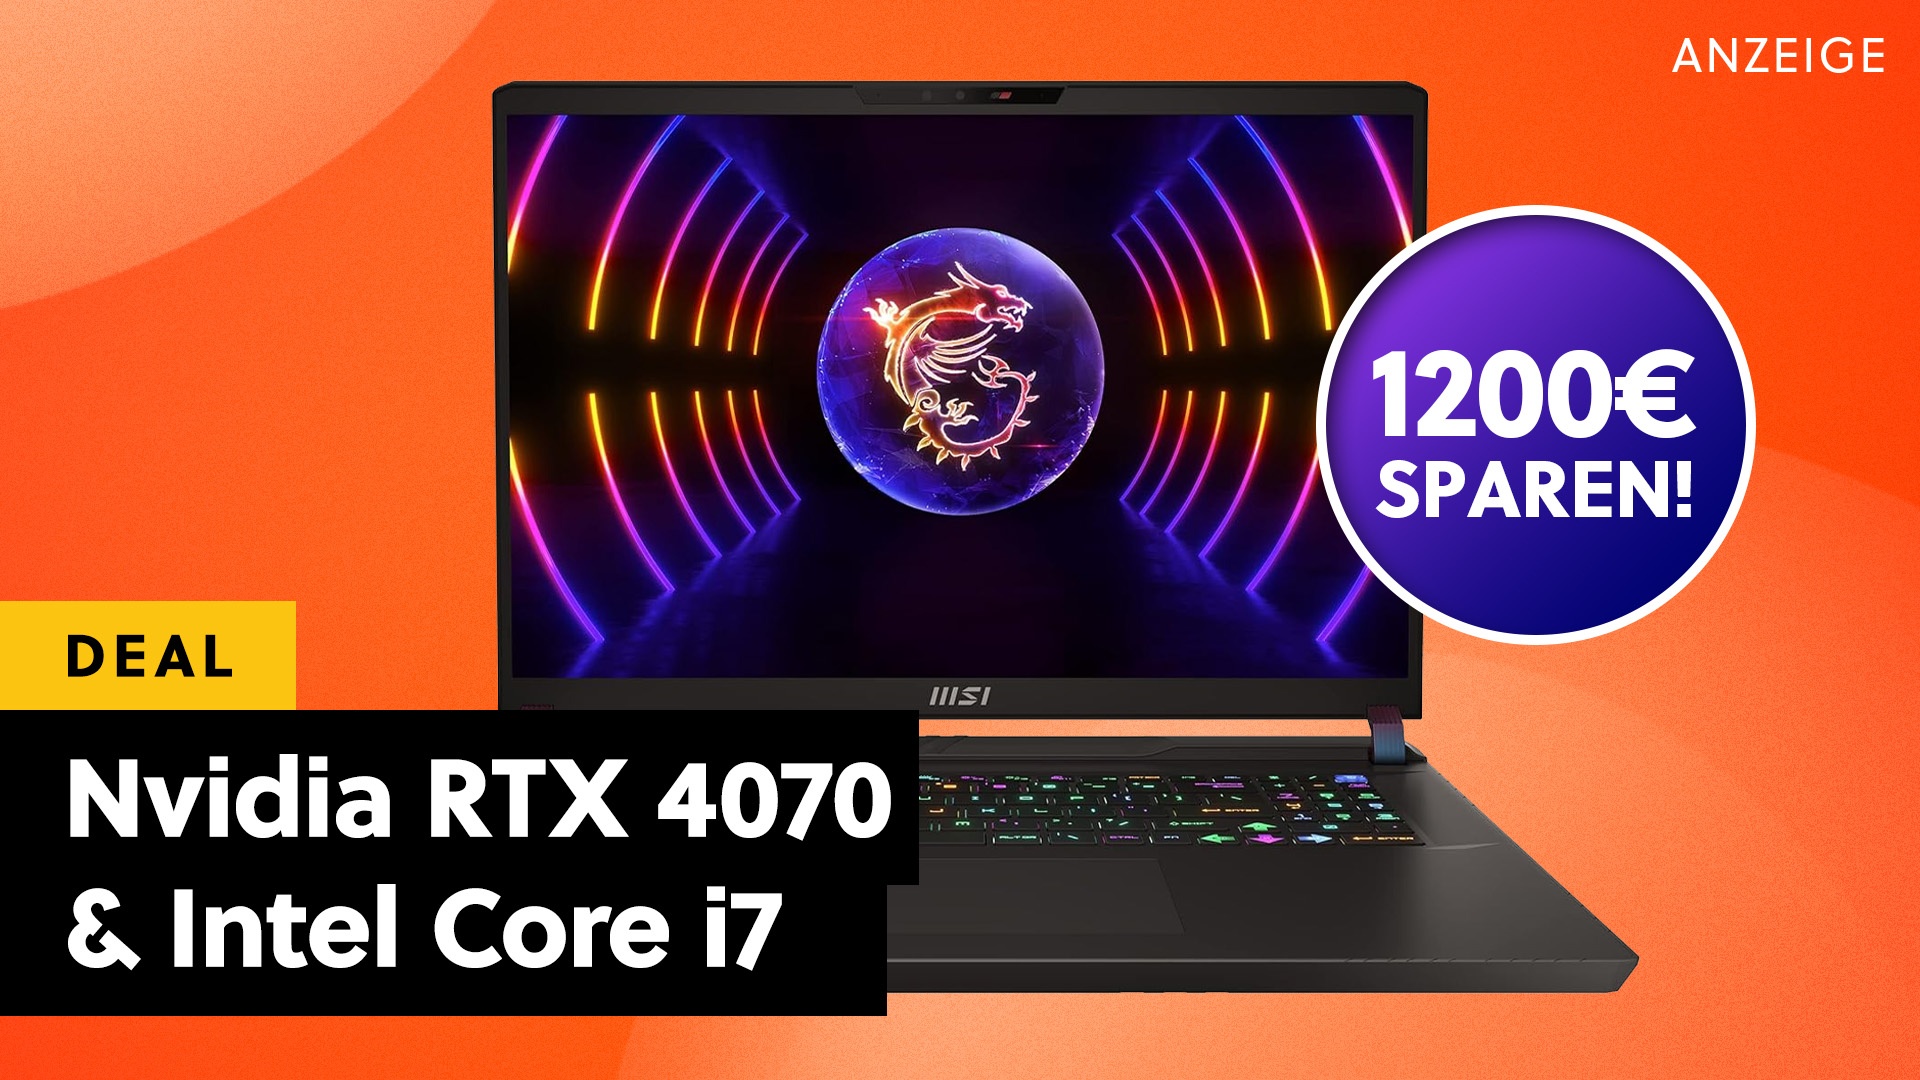 Jetzt mit sage und schreibe 1200€ Rabatt: MSI Gaming Laptop mit Nvidia RTX 4070 und Intel Core i7 im Amazon-Angebot!